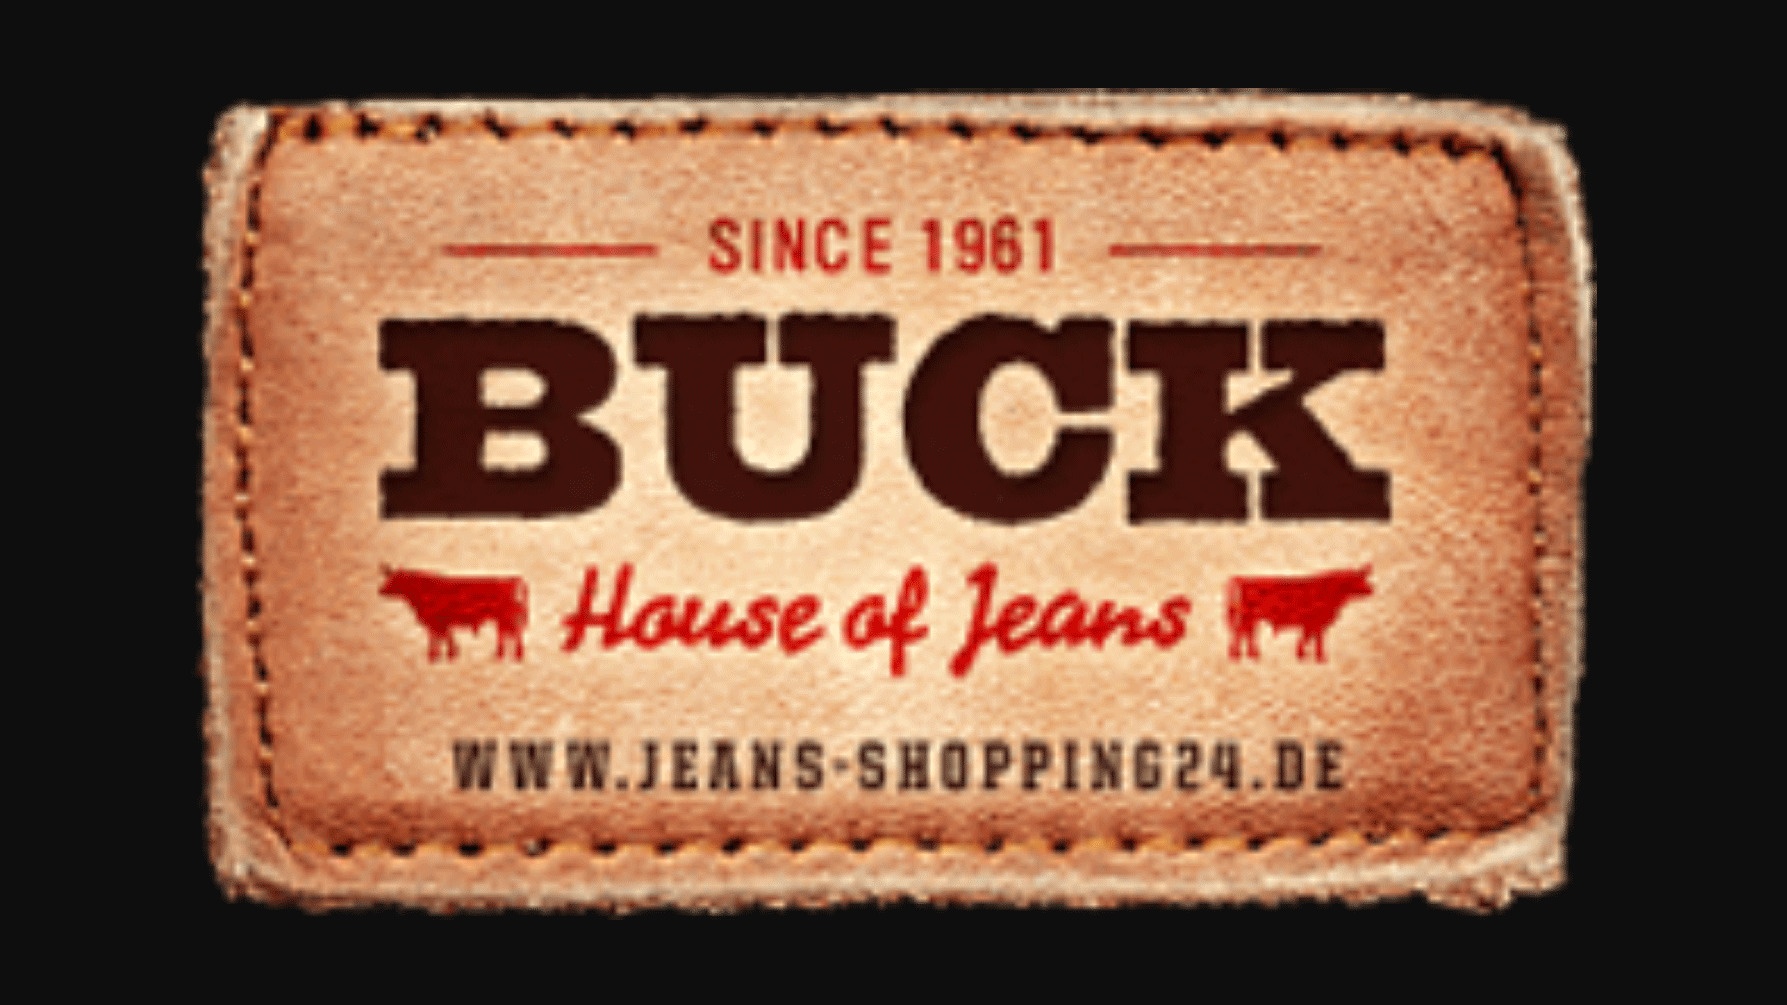 1 24 shop. Buck Jeans. BK-Buck джинсы производитель. Git in джинсы производитель. Джинсы BK Buck Jeans кто производитель.